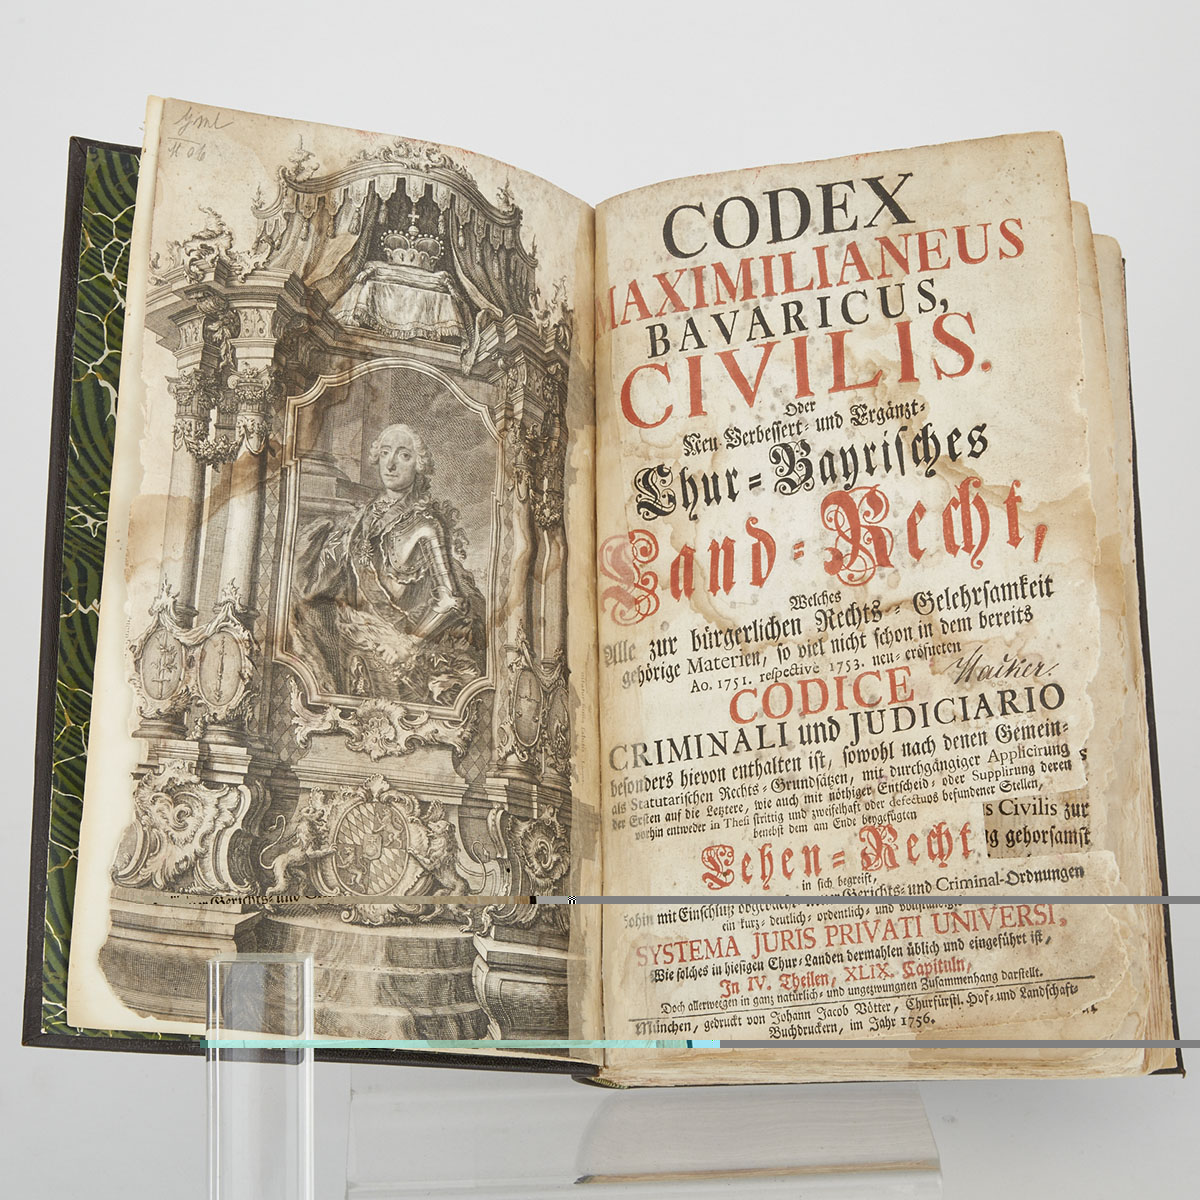 [Book] Codex Maximilianeus Bavaricus Civilis, 1756